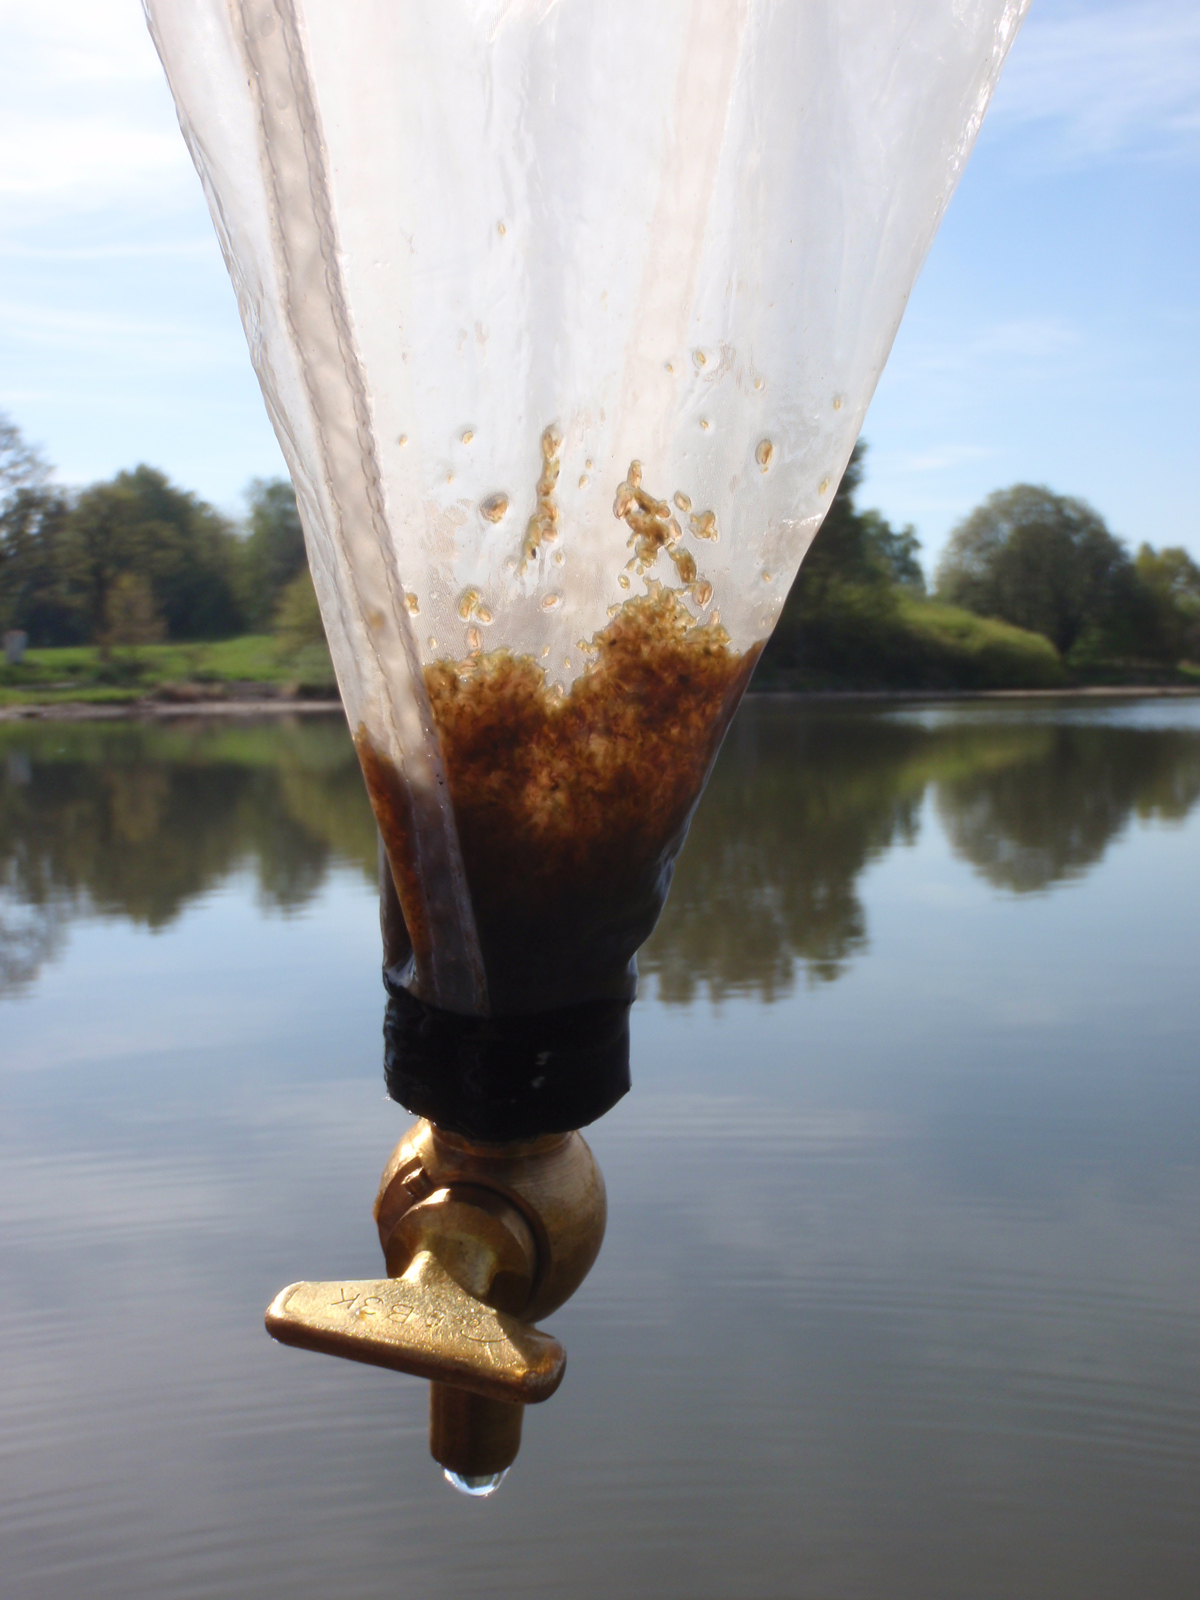 Hrubý (velký) dafniový zooplankton vyvíjí obrovský filtrační tlak a čiří vodu rybníka. Zde v planktonní síti. Foto Jindřich Duras